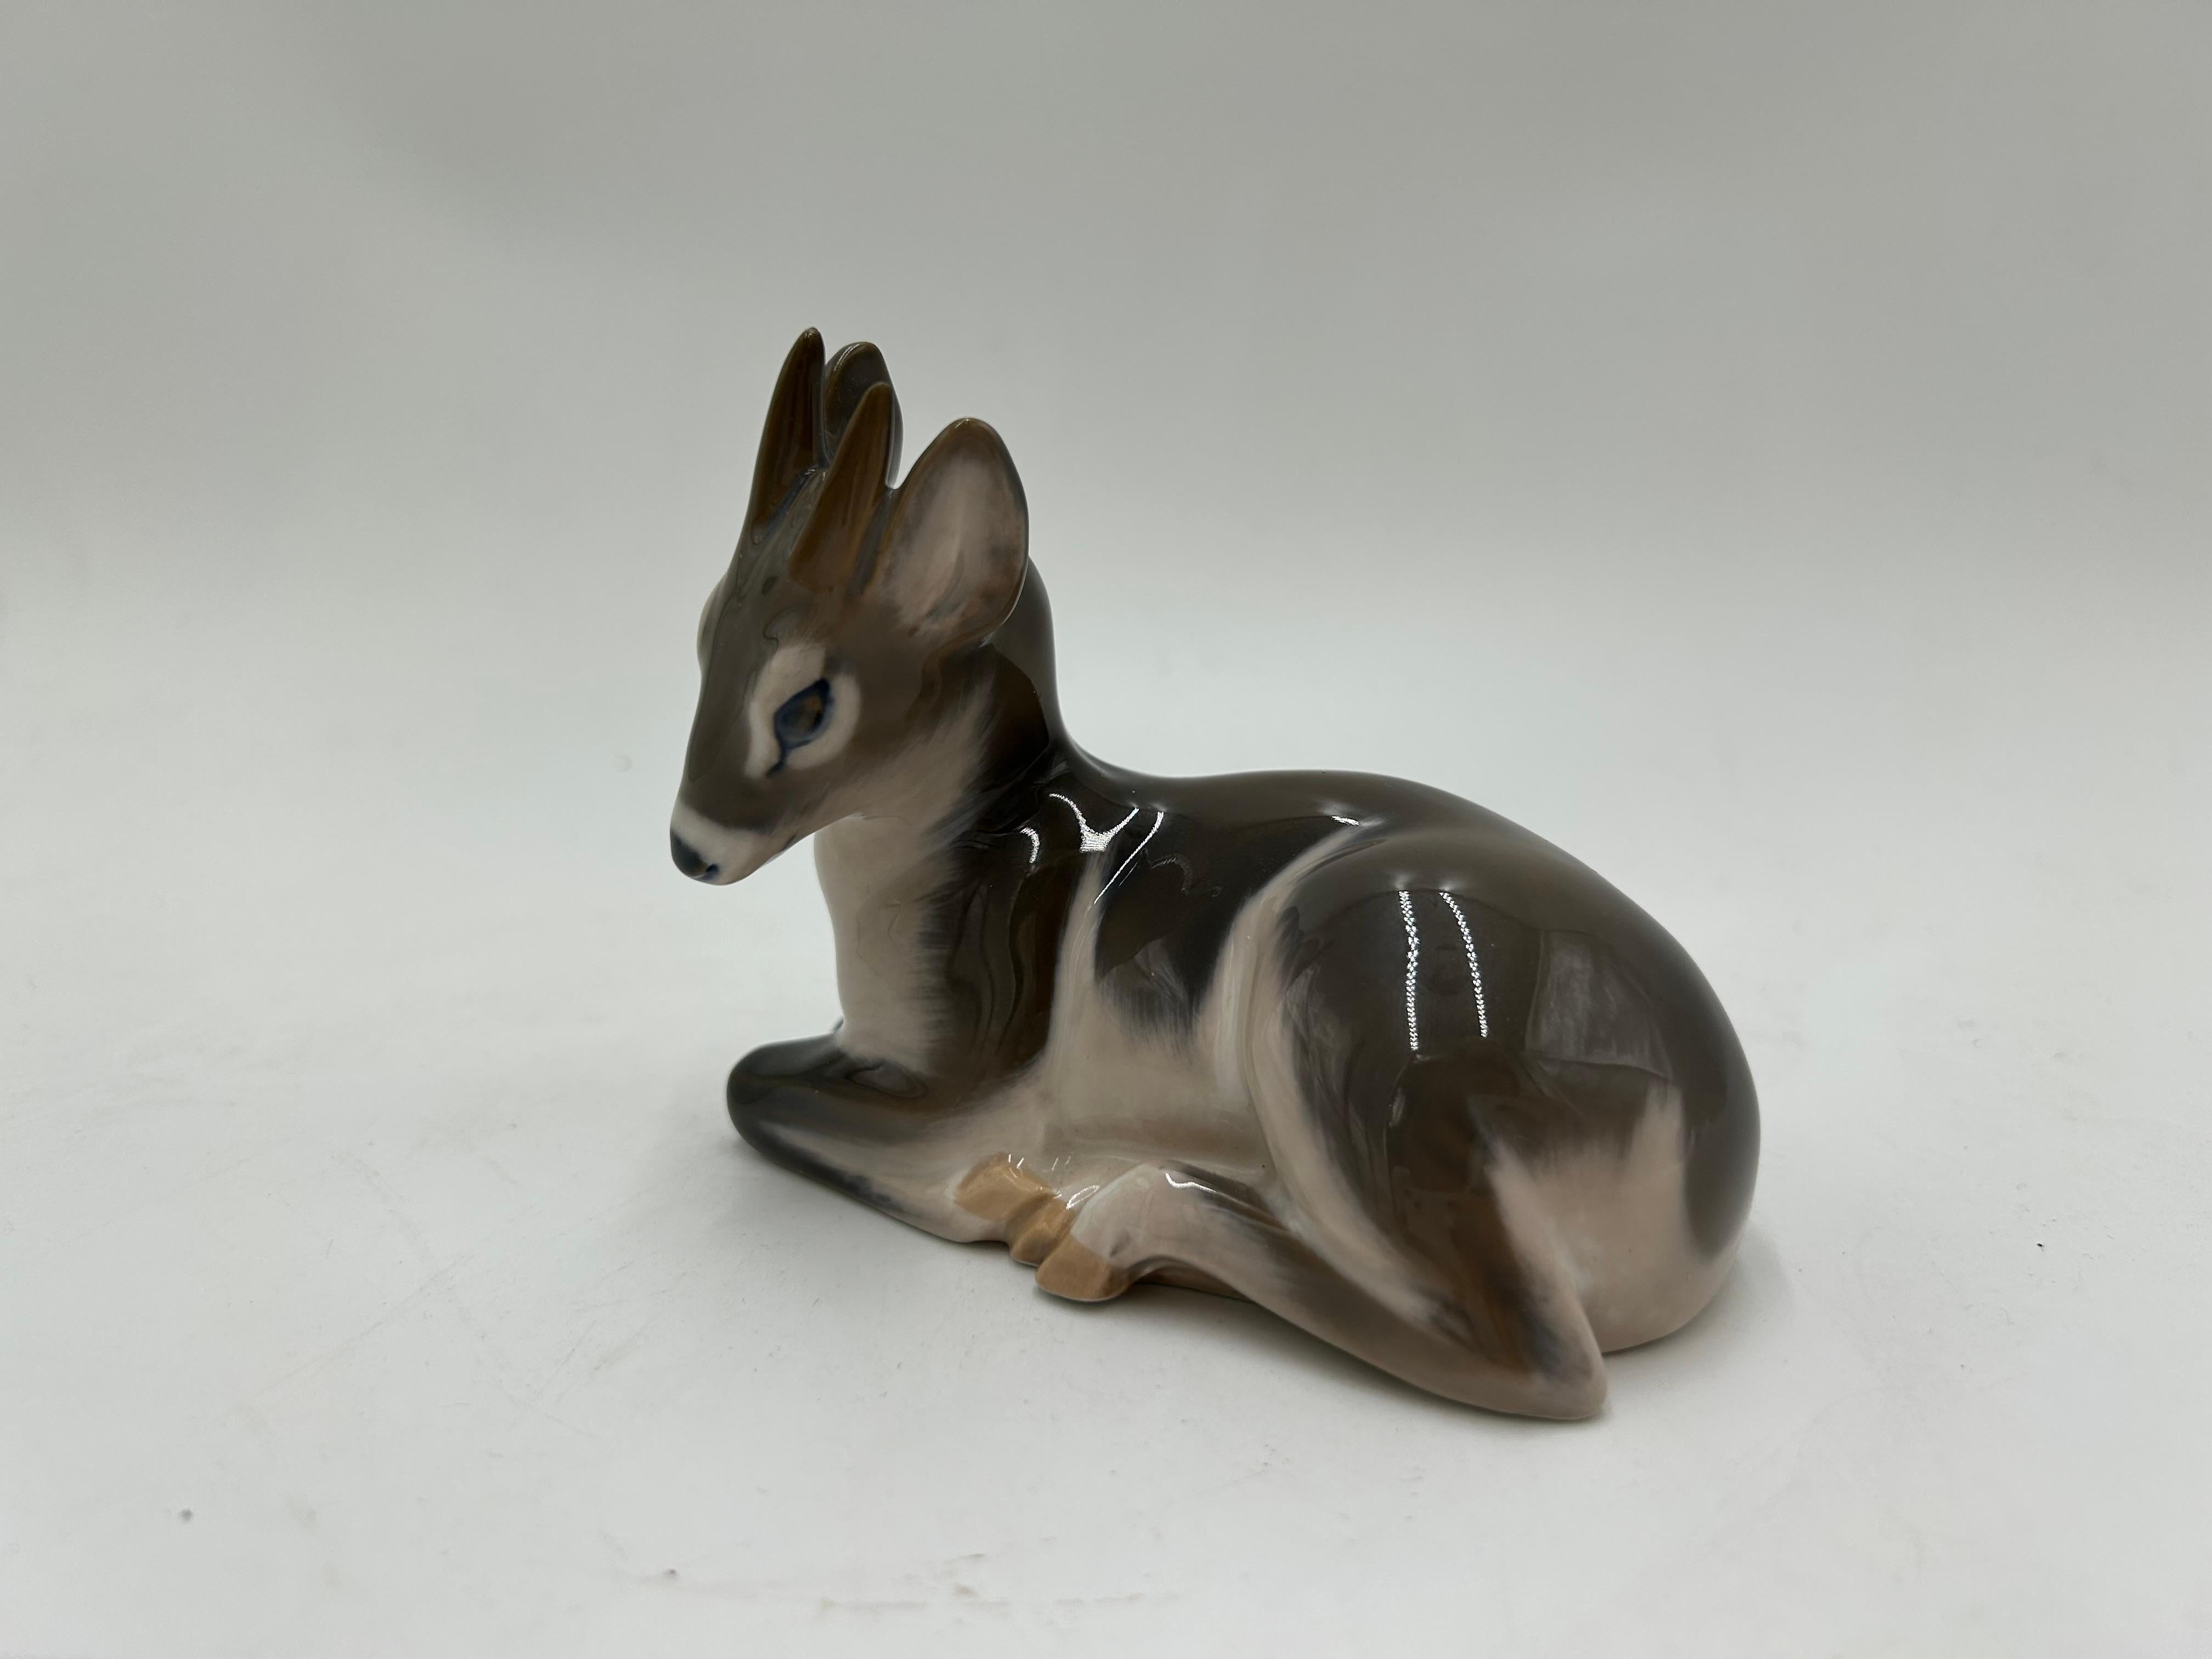 porcelain deer